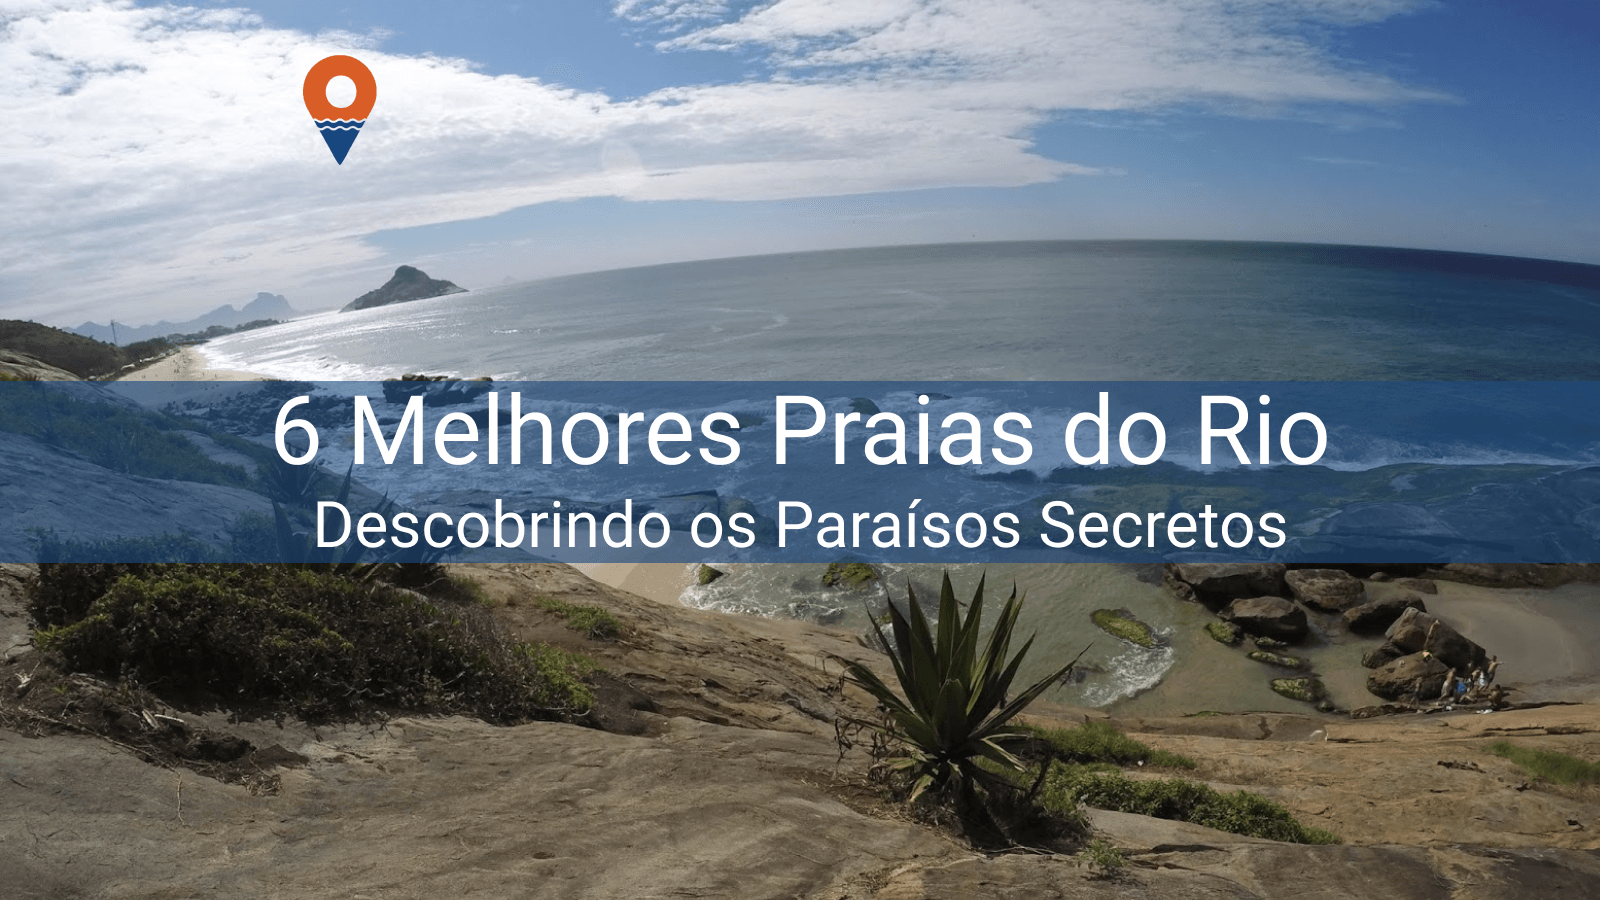 6 Praias que você deveria conhecer no Rio de Janeiro!